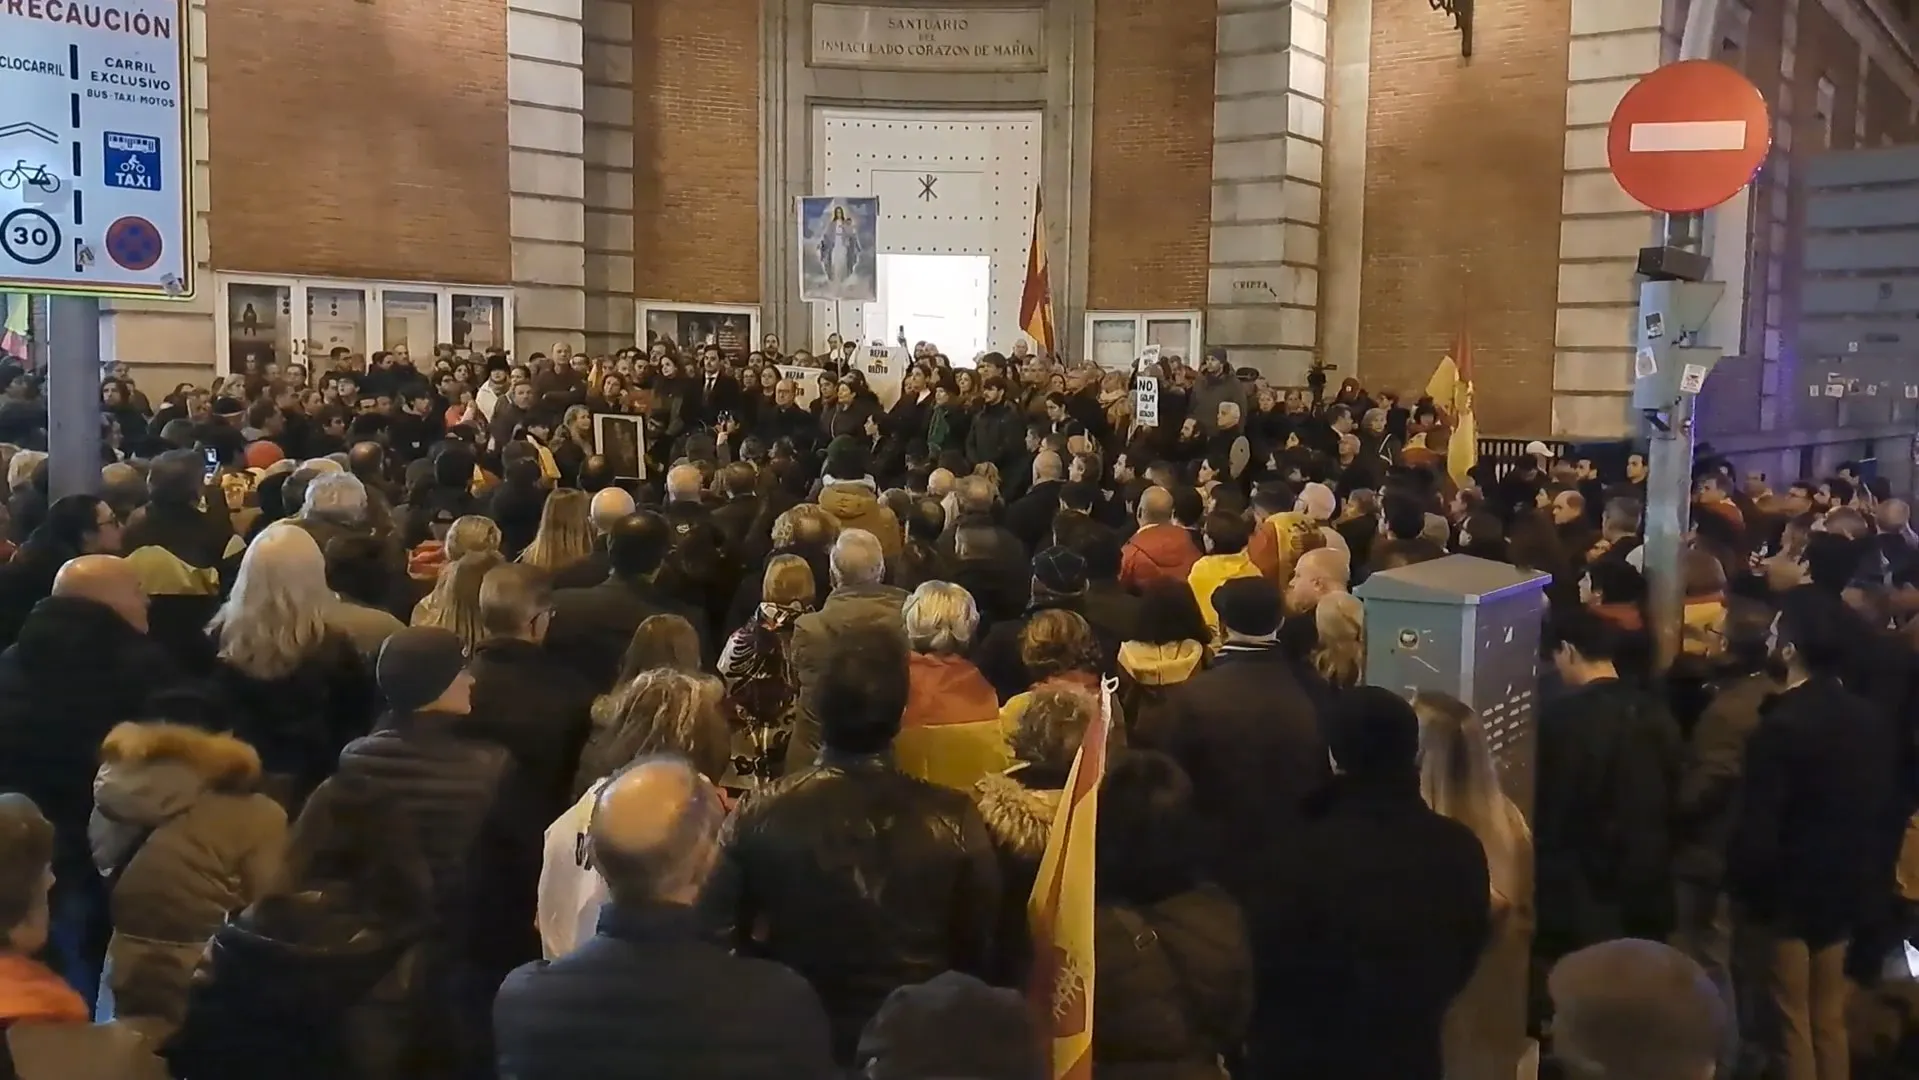 Centenares de españoles se congregan para rezar el Rosario en un acto prohibido por el Gobierno.?w=200&h=150